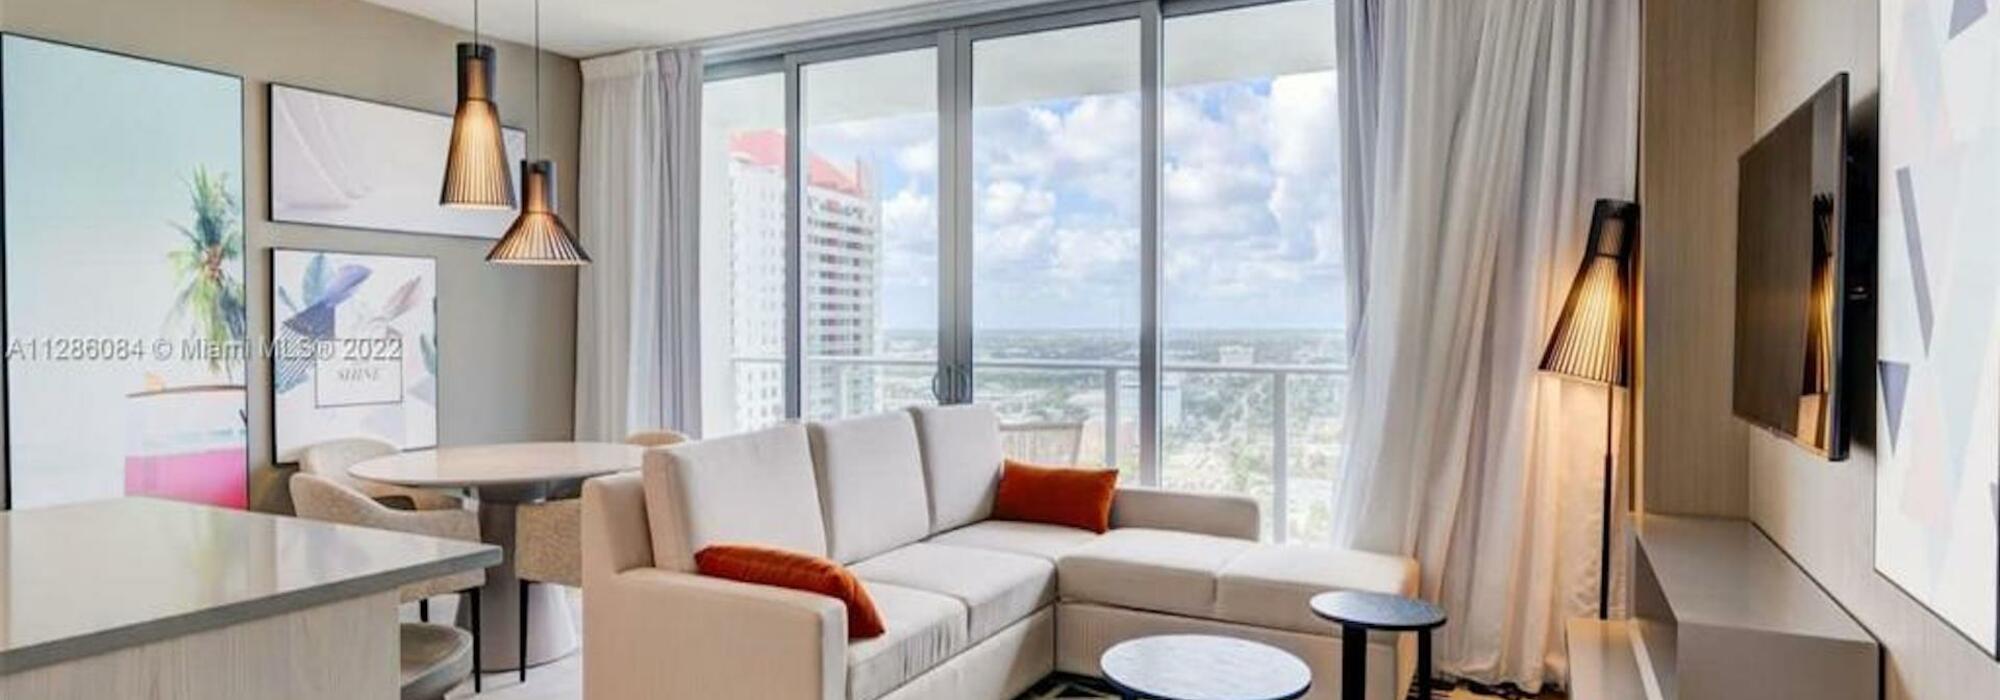 Apartamento amoblado para inversión en venta en Hallandale Beach, Miami, Estados Unidos